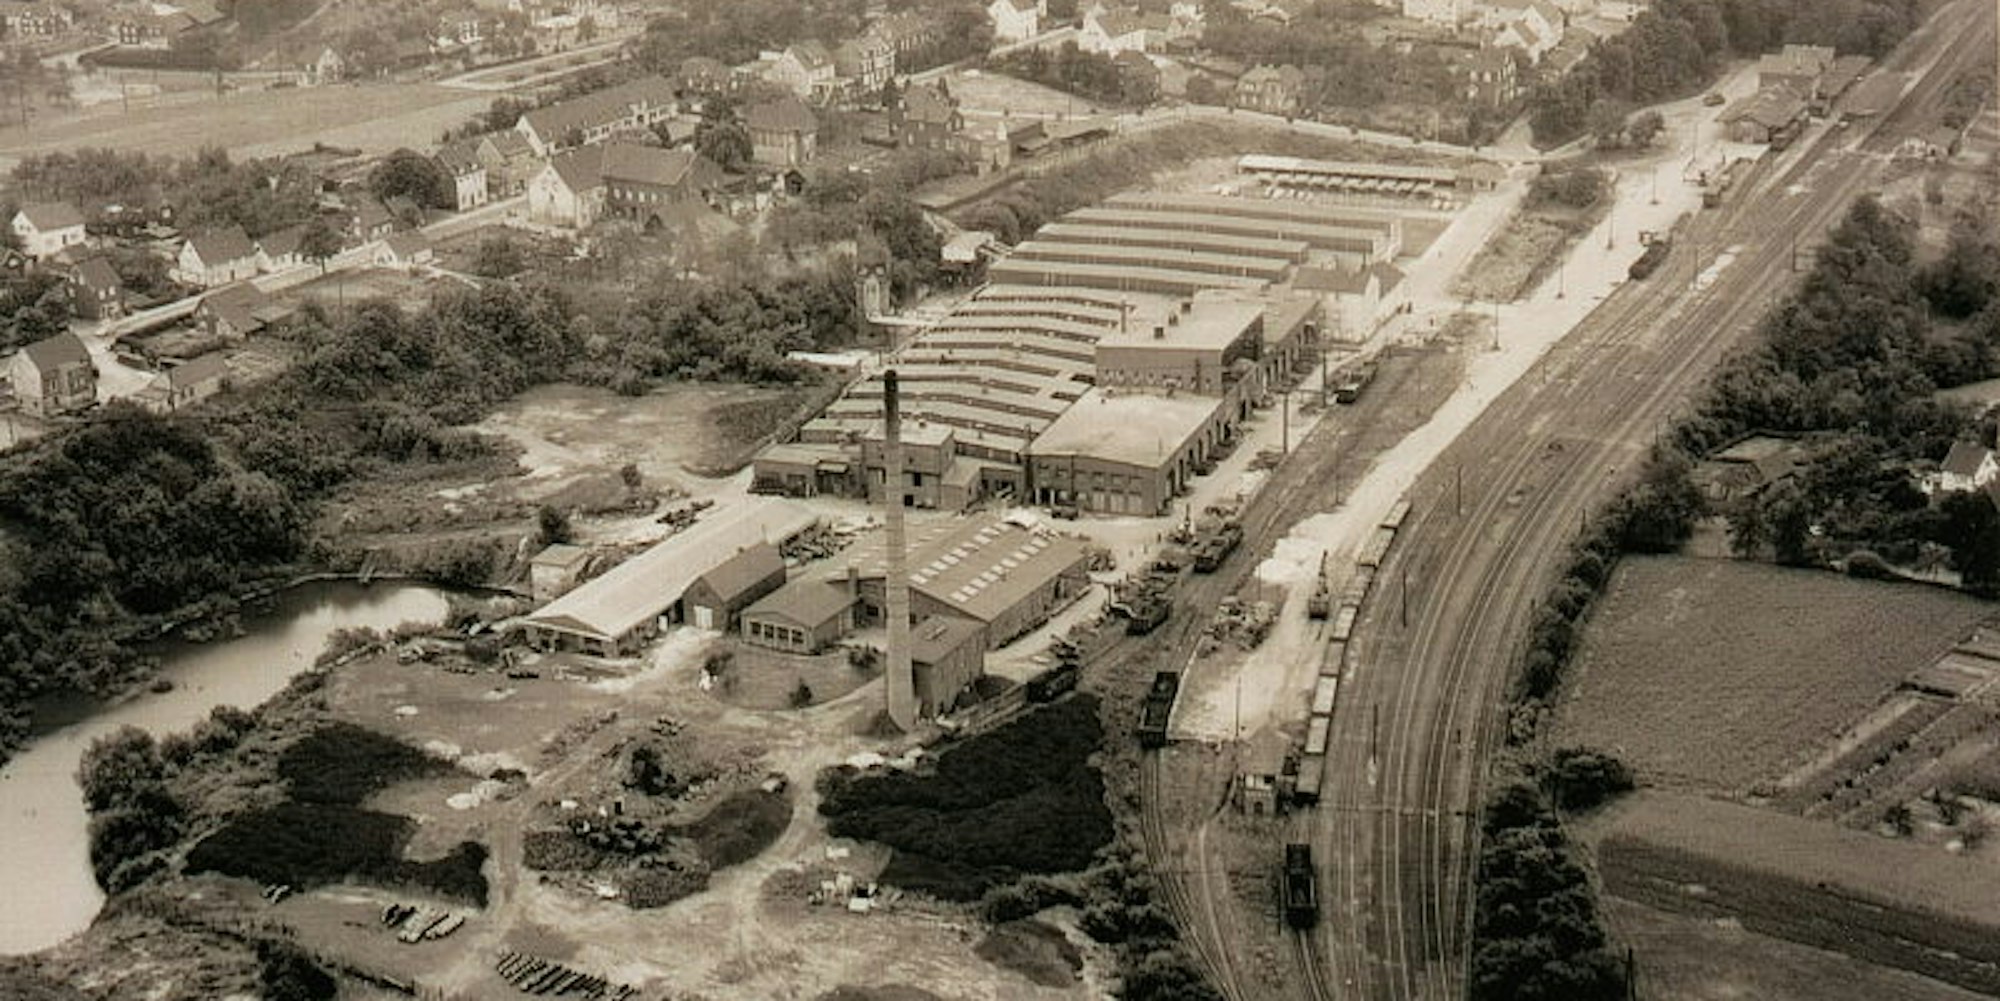 Der ehemalige Bahnhof in Burscheid in einer Luftaufnahme. Die Firma Goetze und die Ziegelei konnten die Güterwaggons direkt nutzen.